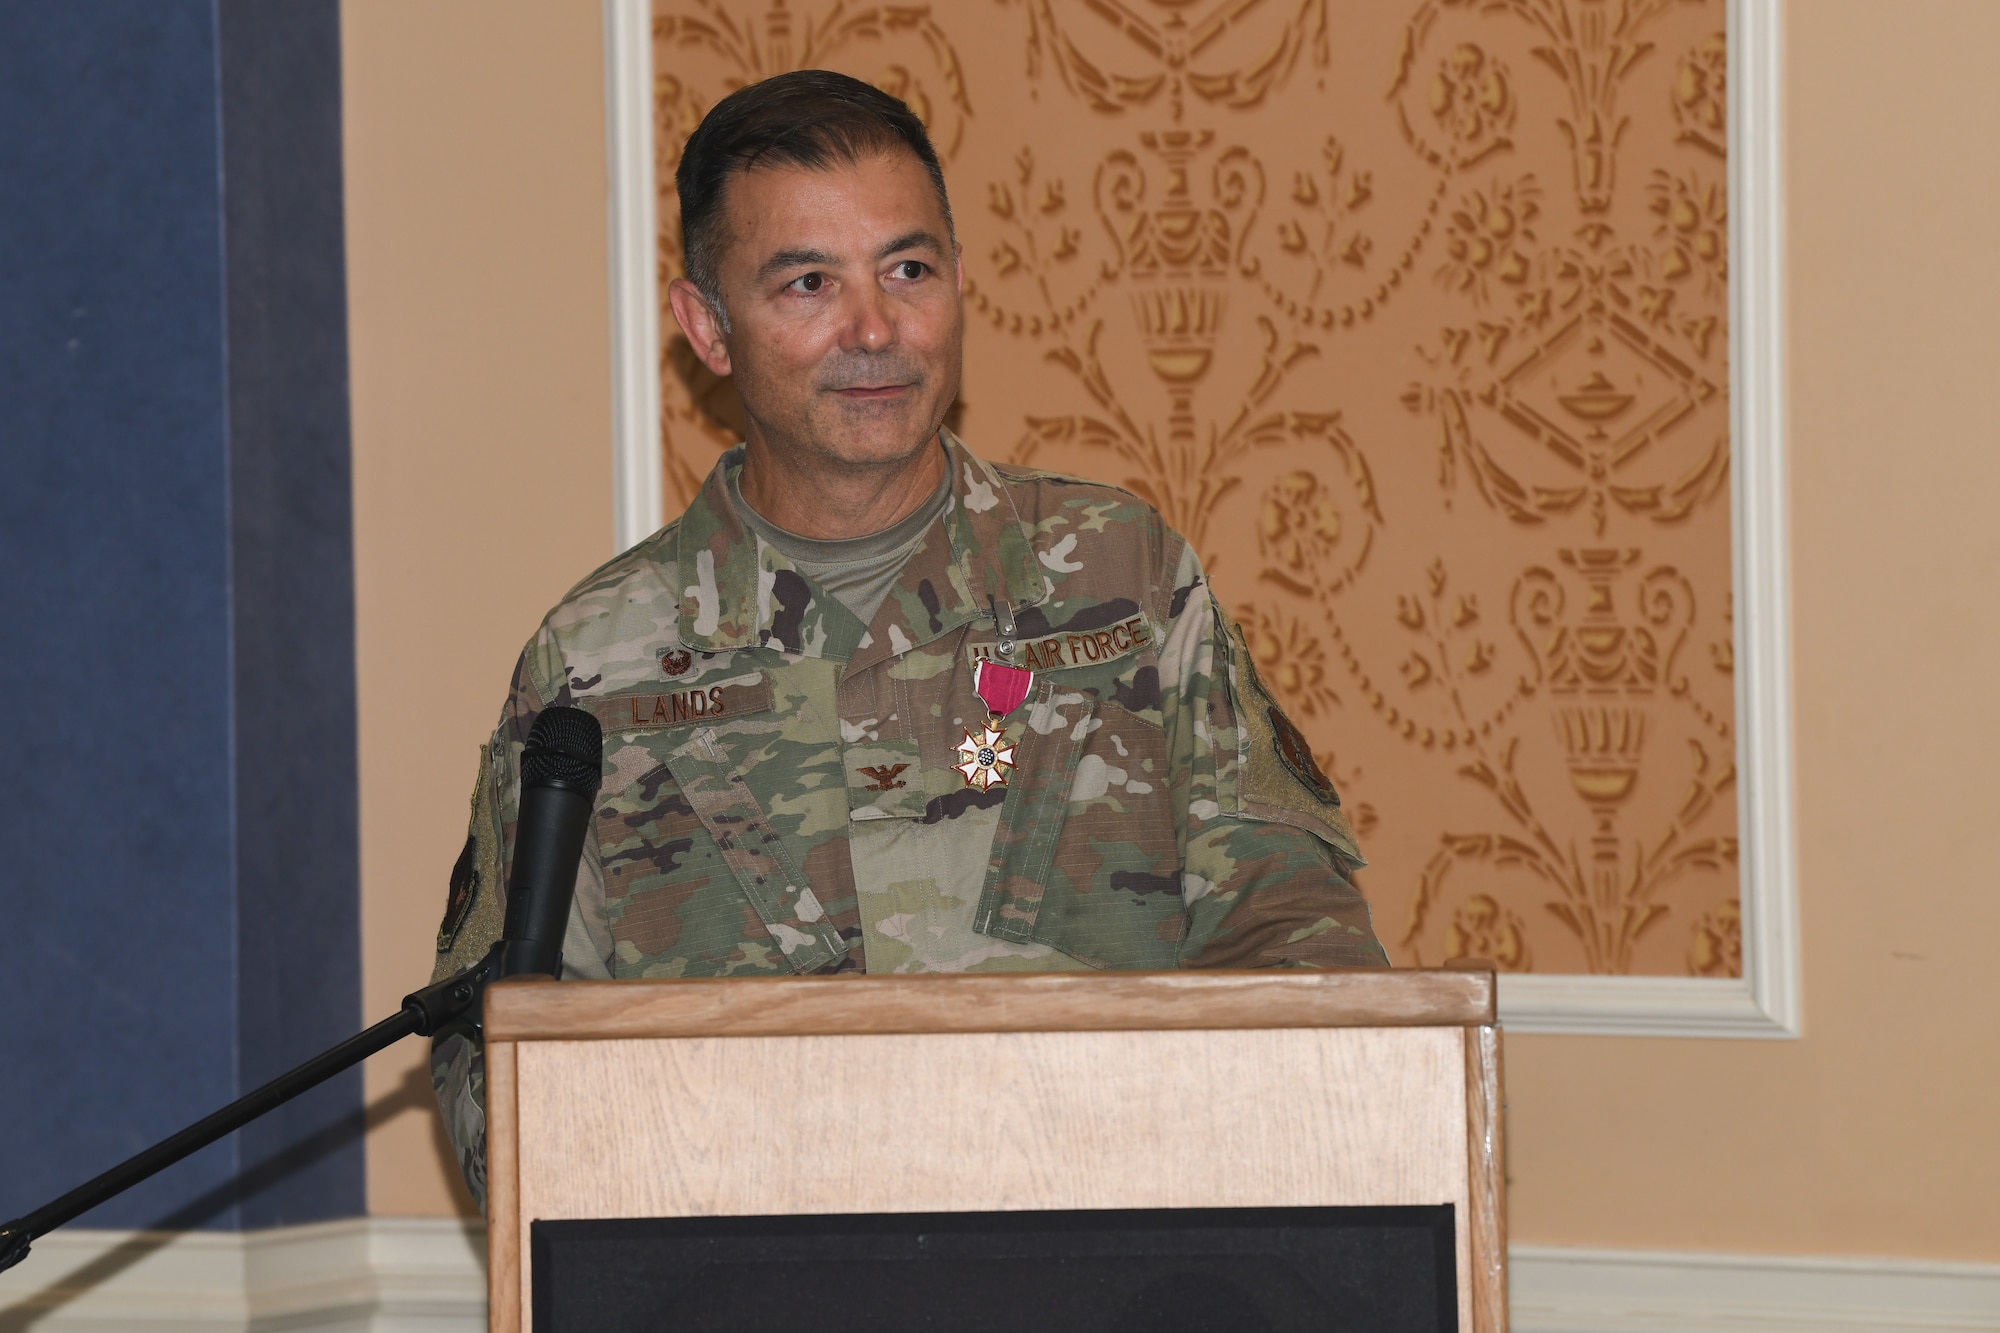 Military member standing at podium.